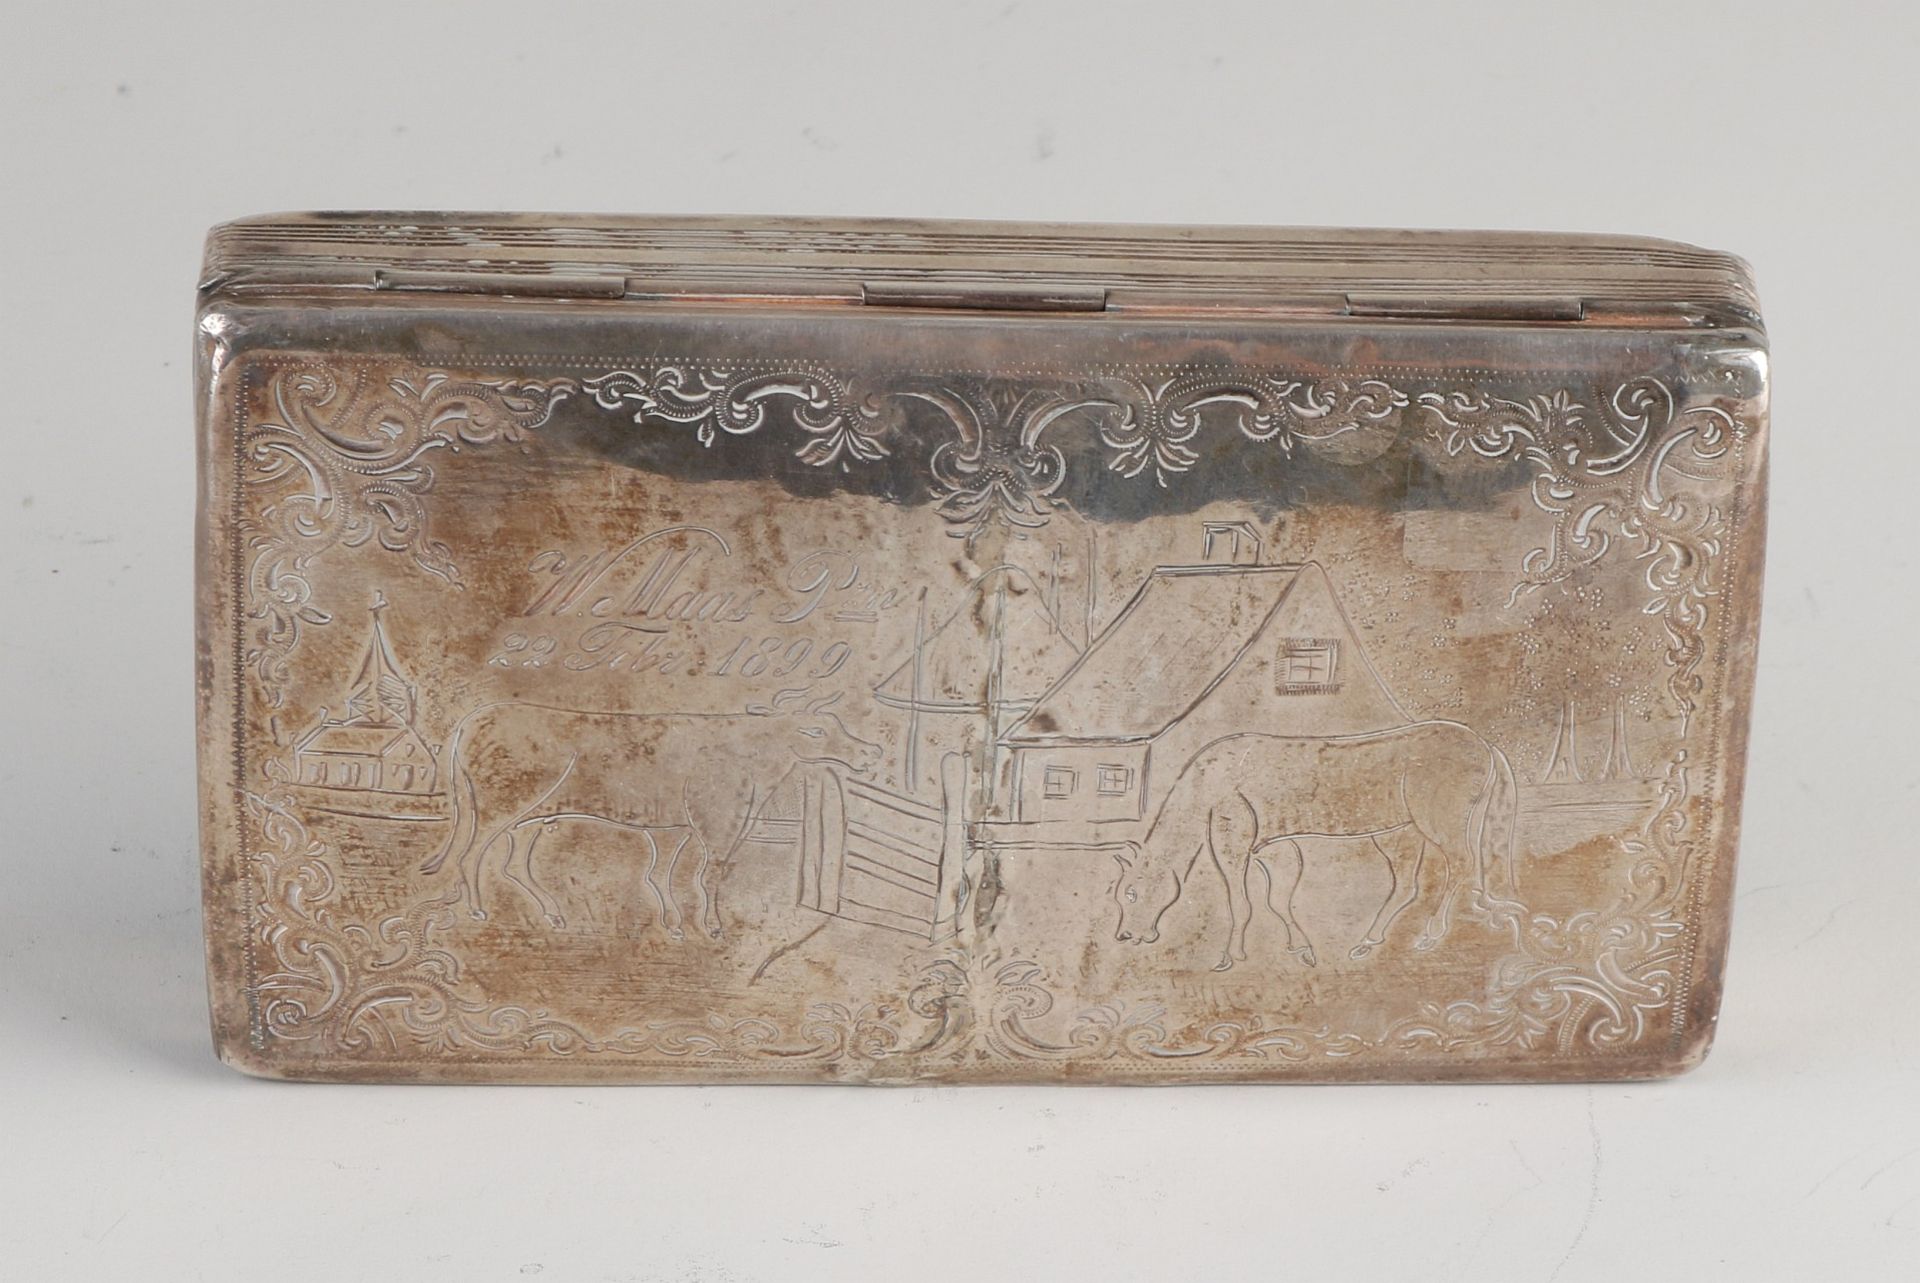 Silberne Tabakdose, 833/000, rechteckiges Modell mit einer eingravierten Darstellung eines Pferdes - Image 2 of 2